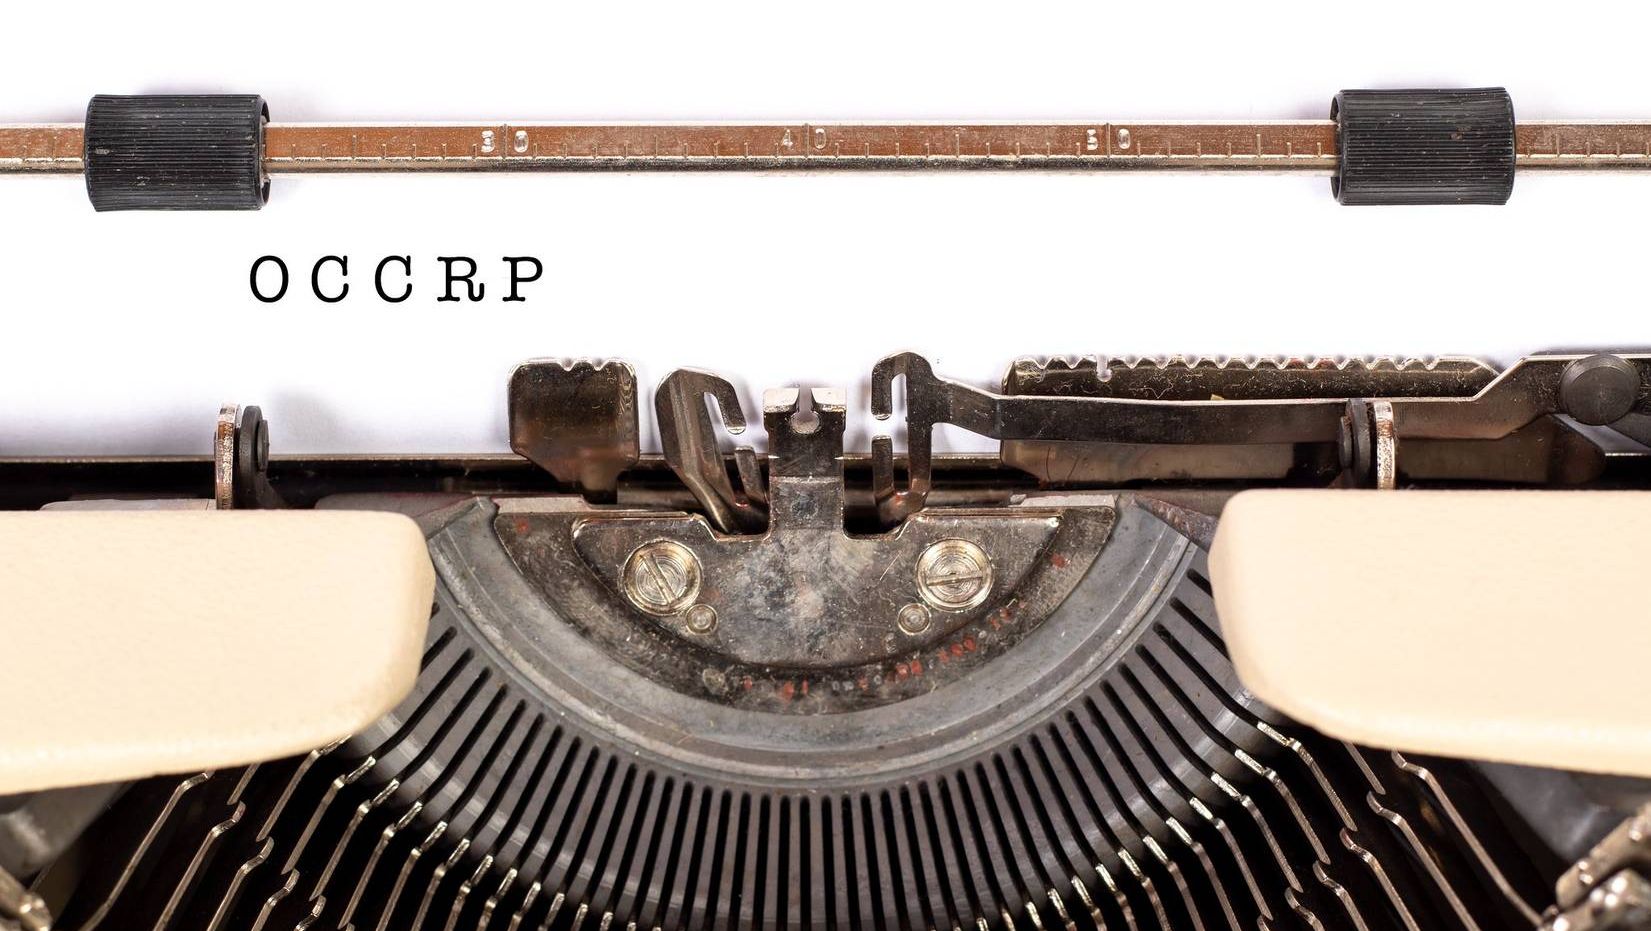 OCCRP - проект по расследованию коррупции и организованной преступности.